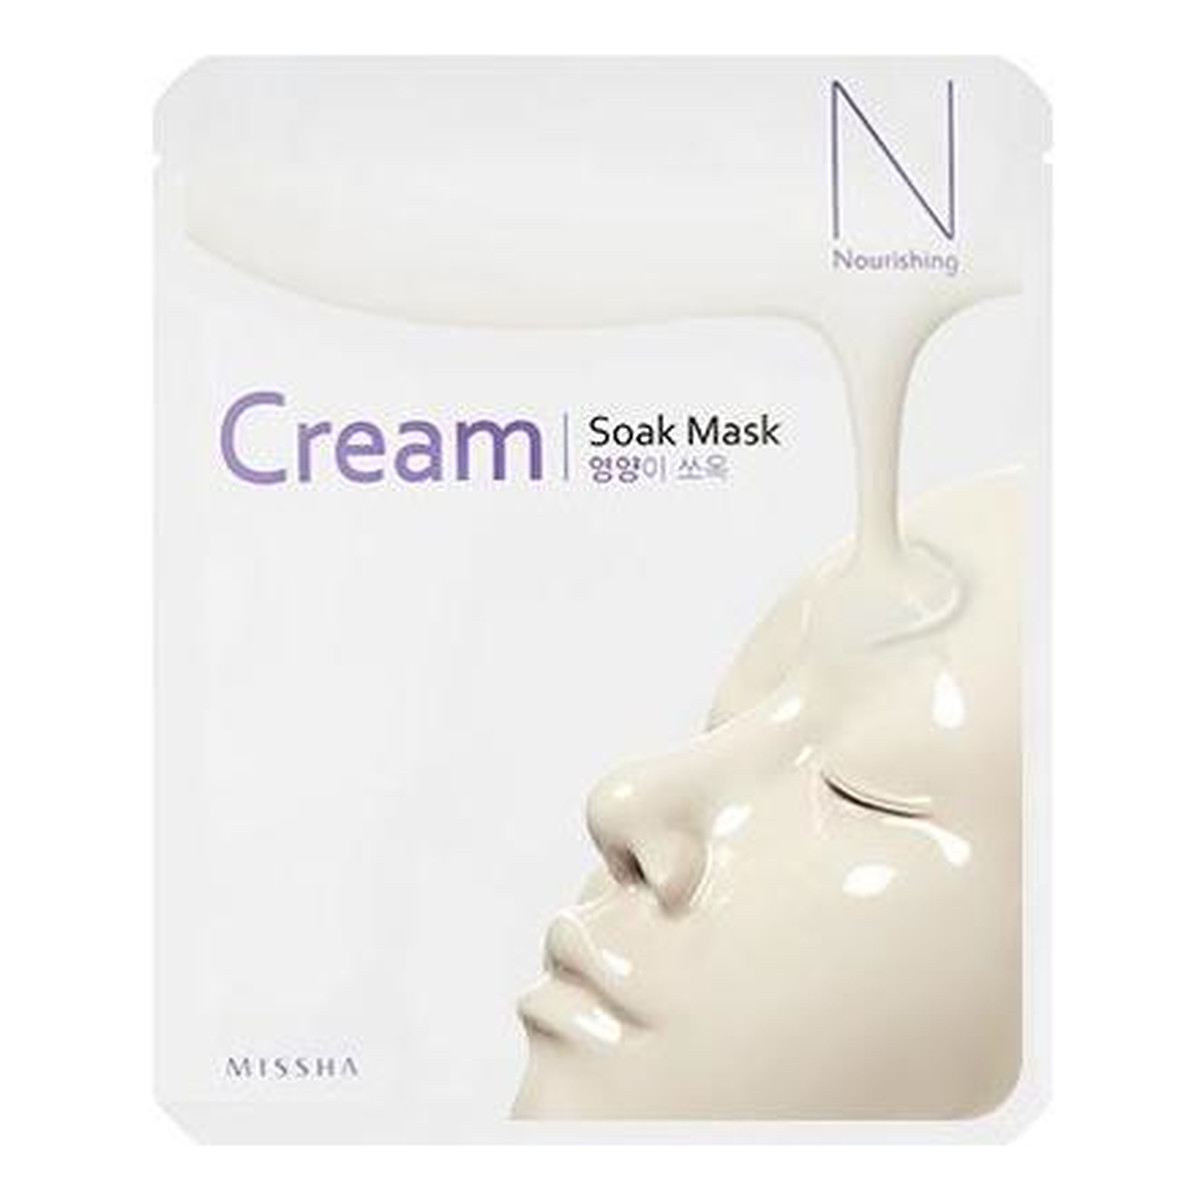 Missha Cream Soak Mask Nourishing Odżywcza Maseczka W Płachcie 23g